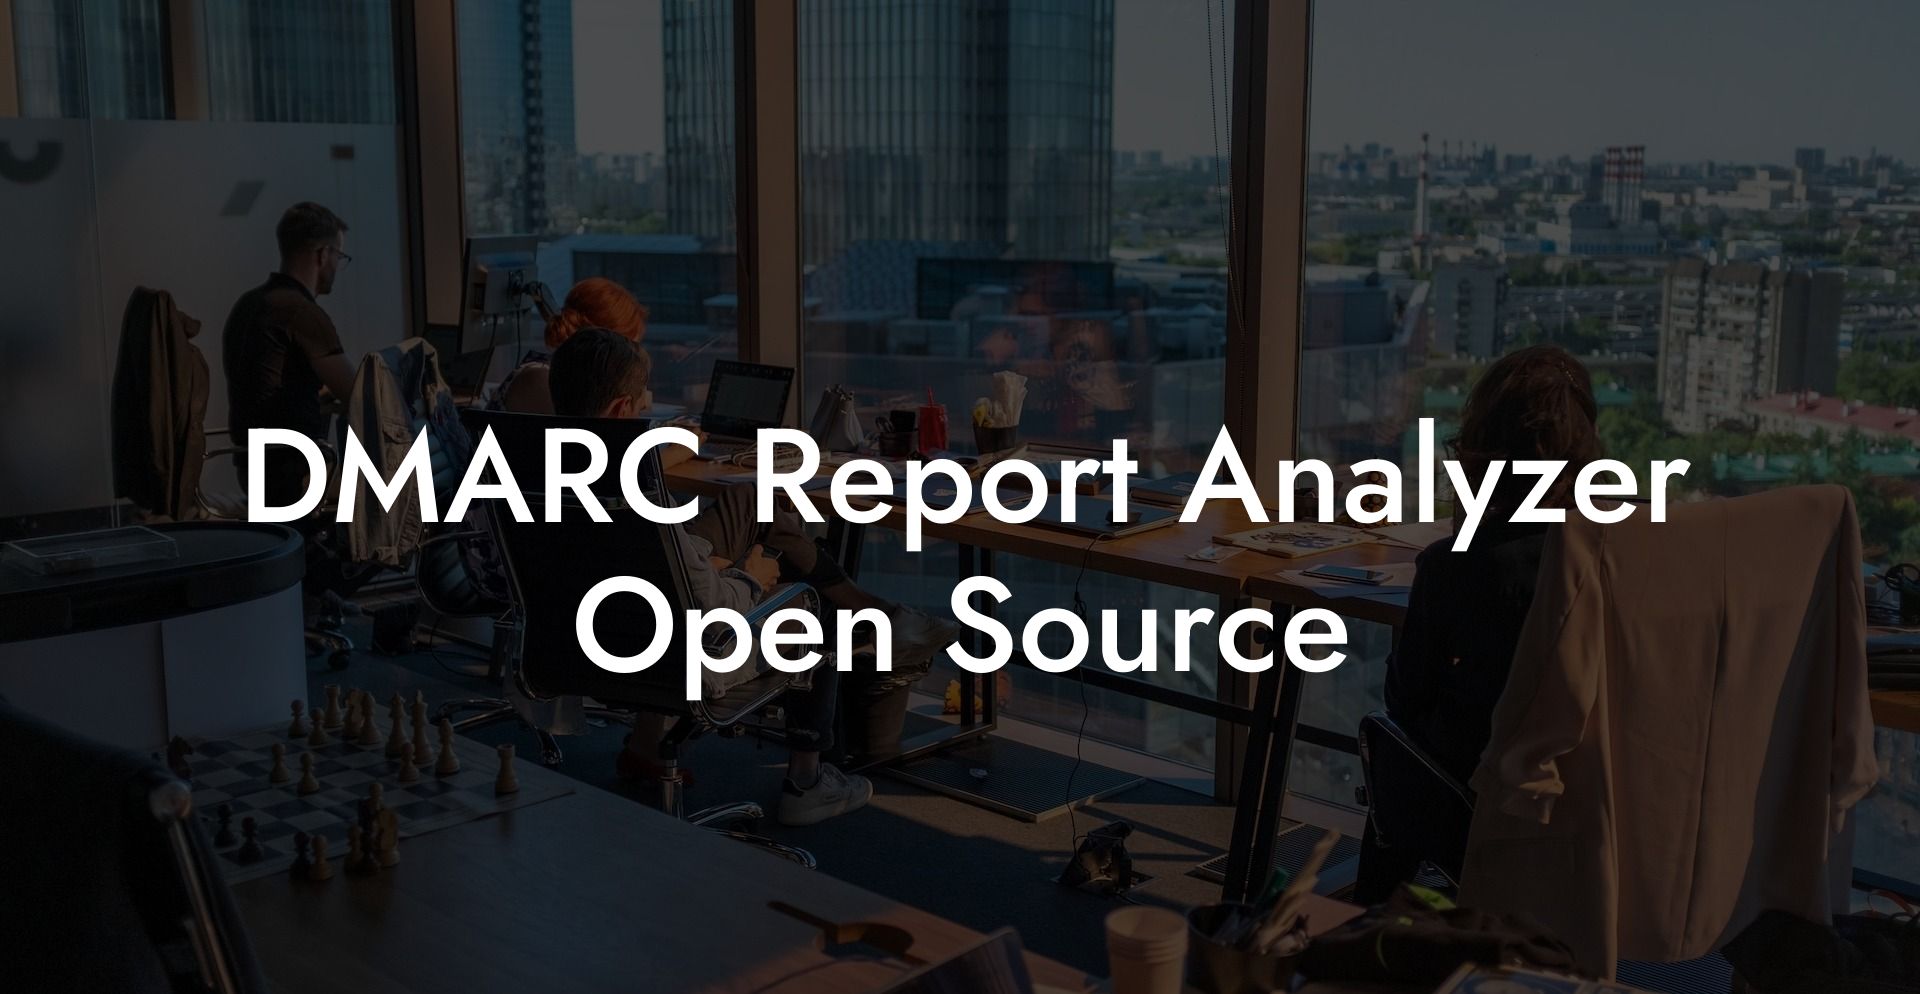 DMARC Report Analyzer Open Source